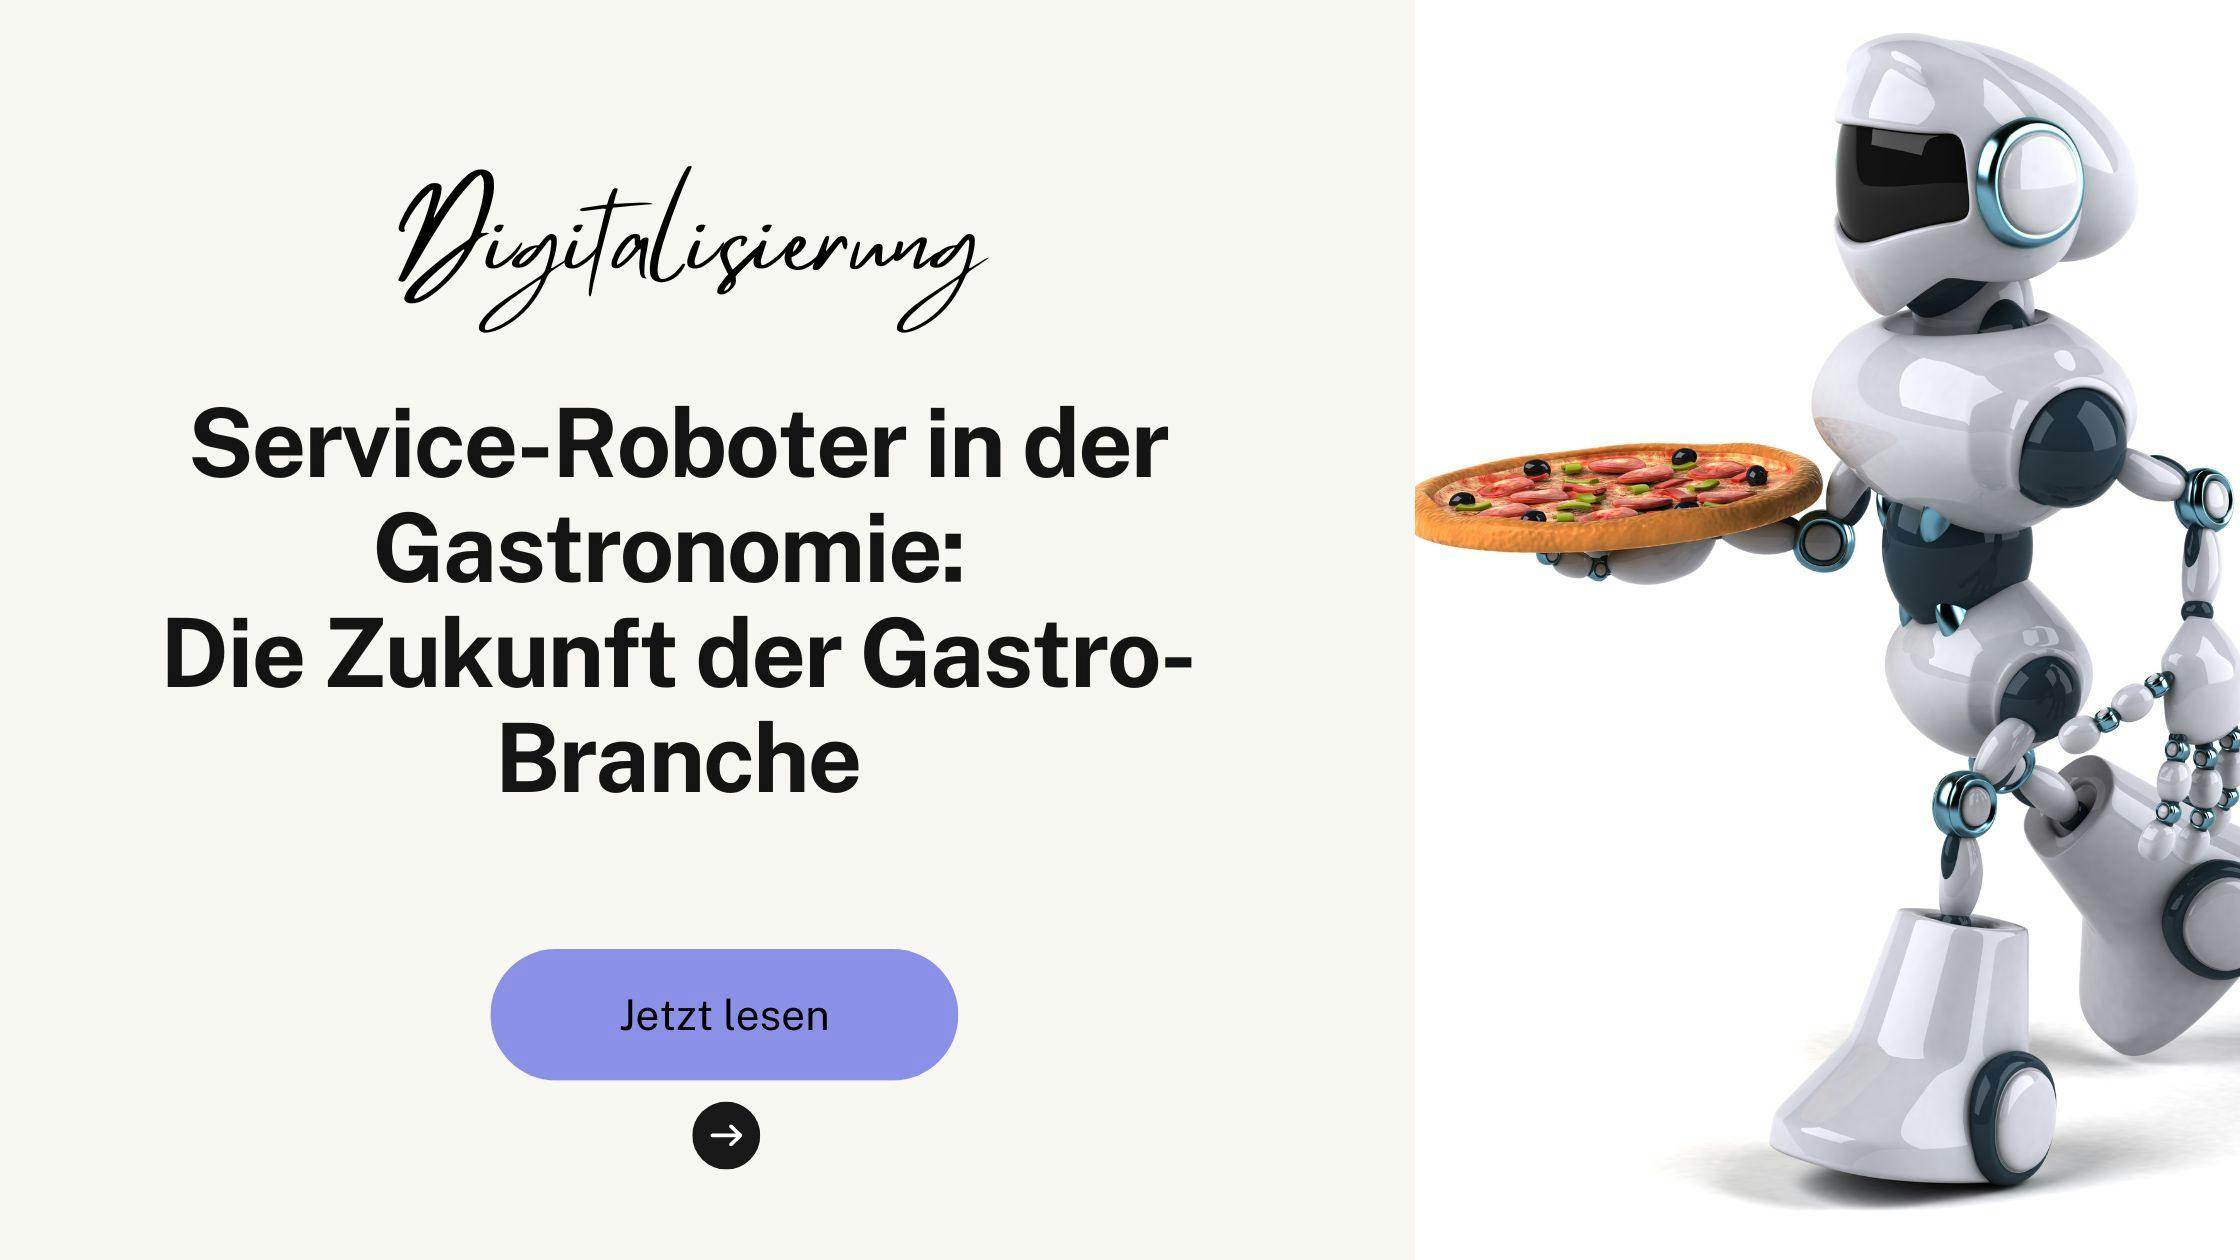 Service-Roboter in der Gastronomie: Die Zukunft der Gastro-Branche